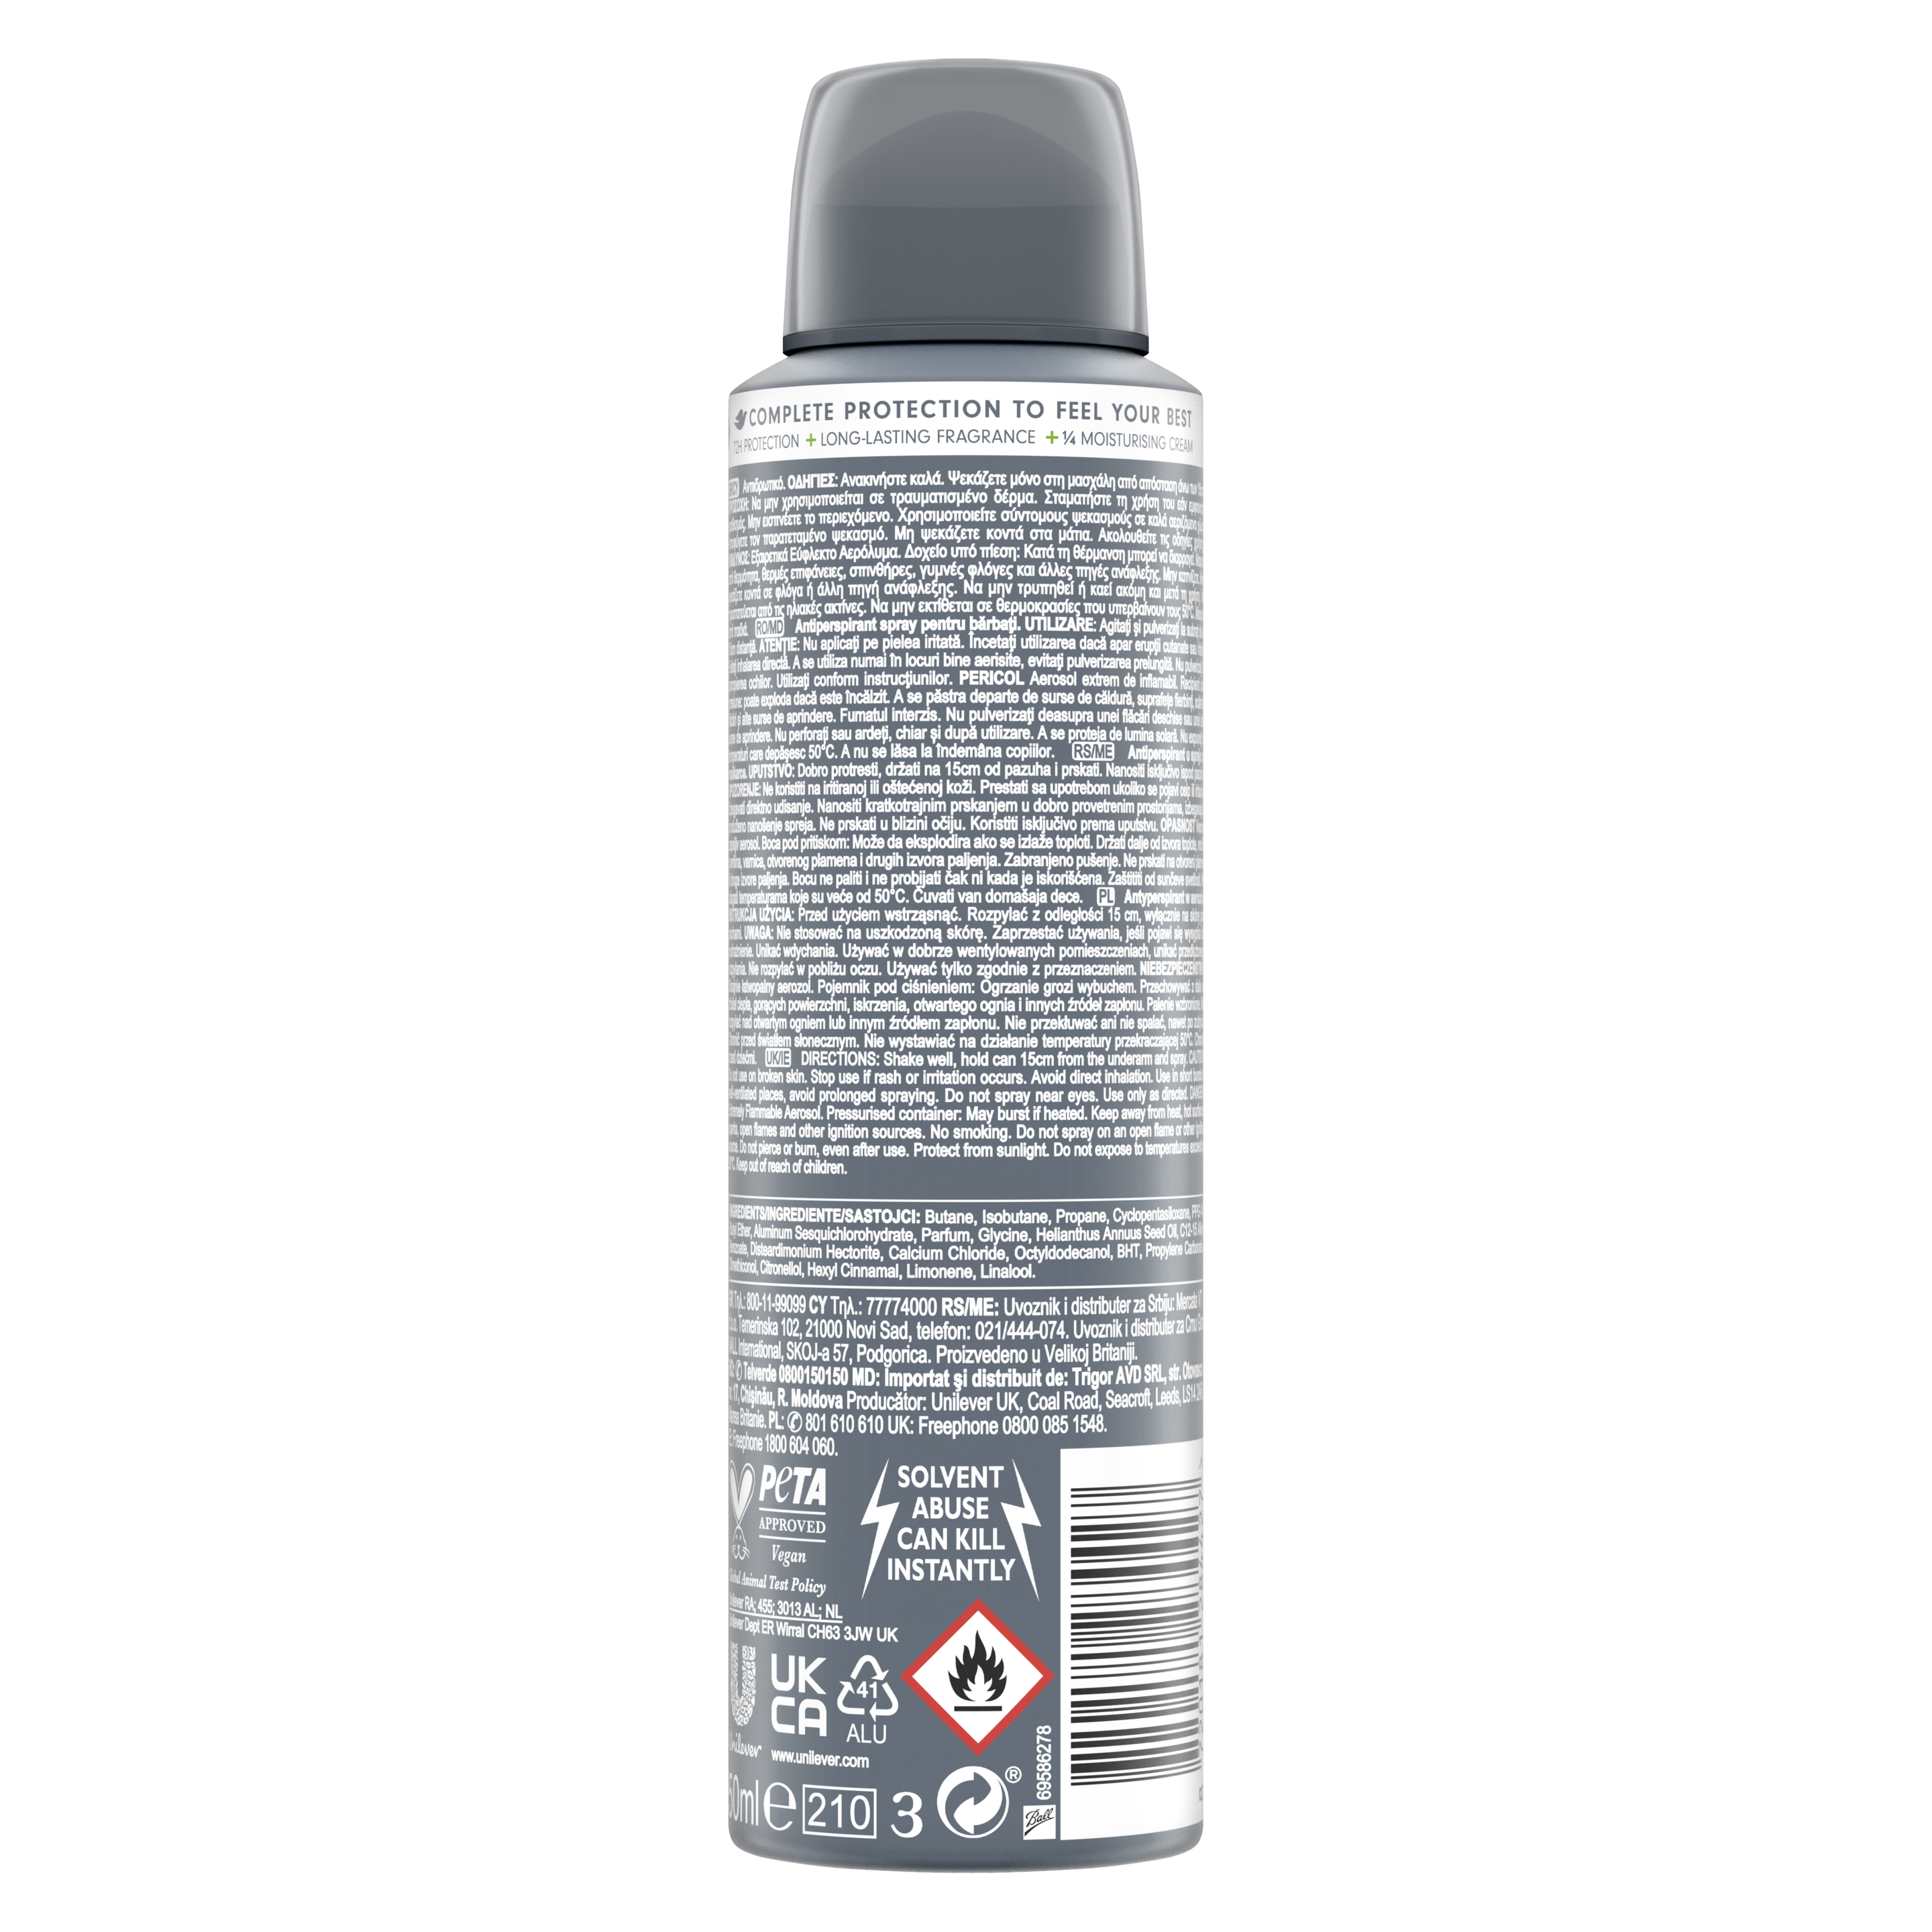 Men+Care Advanced Extra Fresh Antiperspirant Deodorant Aerosol